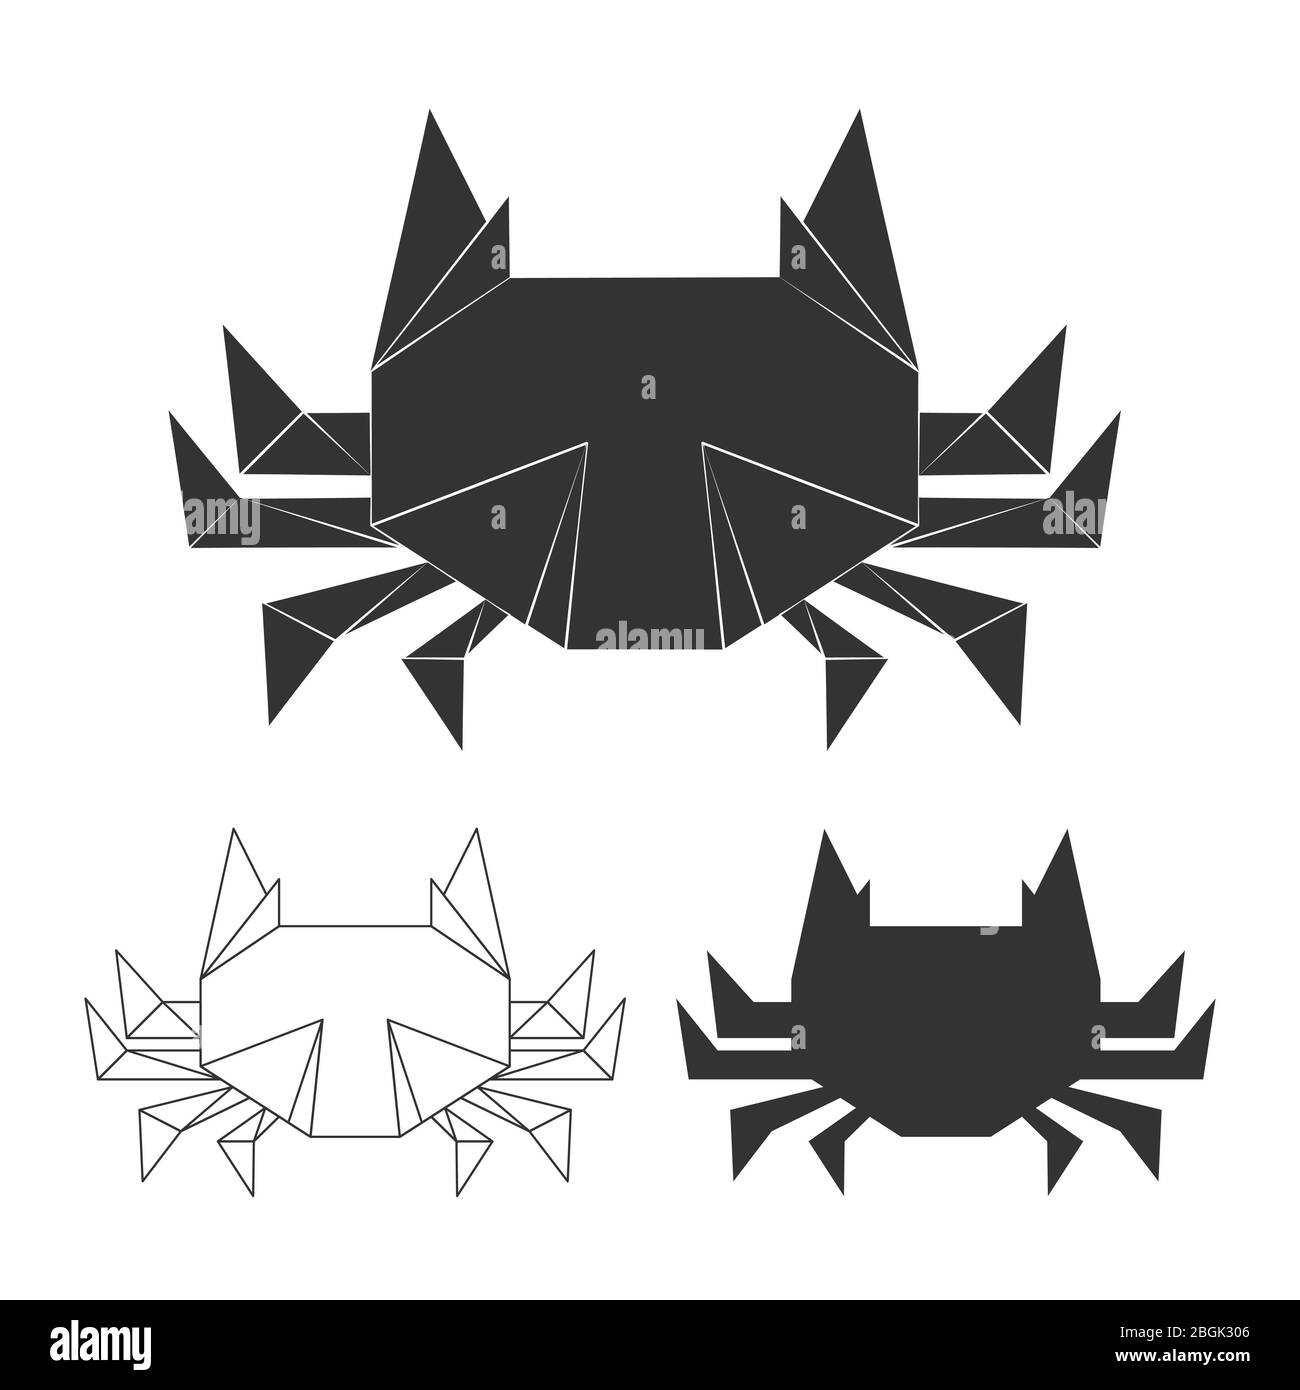 Vector Papier japanische Krabben für Logo, Print, Design. Krabbe Silhouette isoliert auf weißem Untergrund Illustration Stock Vektor